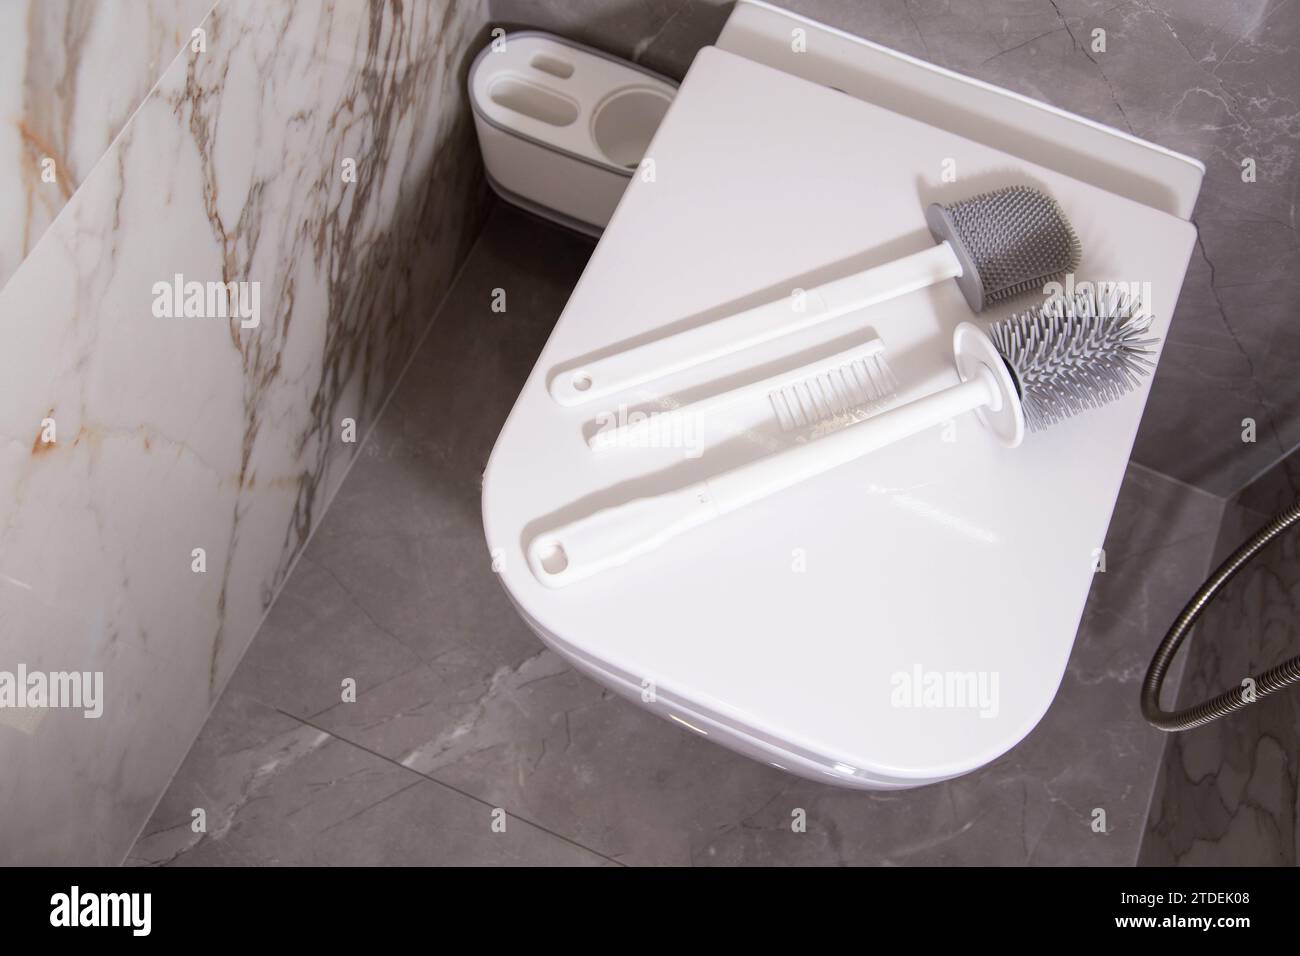 Les brosses en silicone pour nettoyer les toilettes reposent sur le couvercle des toilettes suspendues au mur. Le concept de soins et de nettoyage des toilettes de la saleté et des bactéries. G Banque D'Images